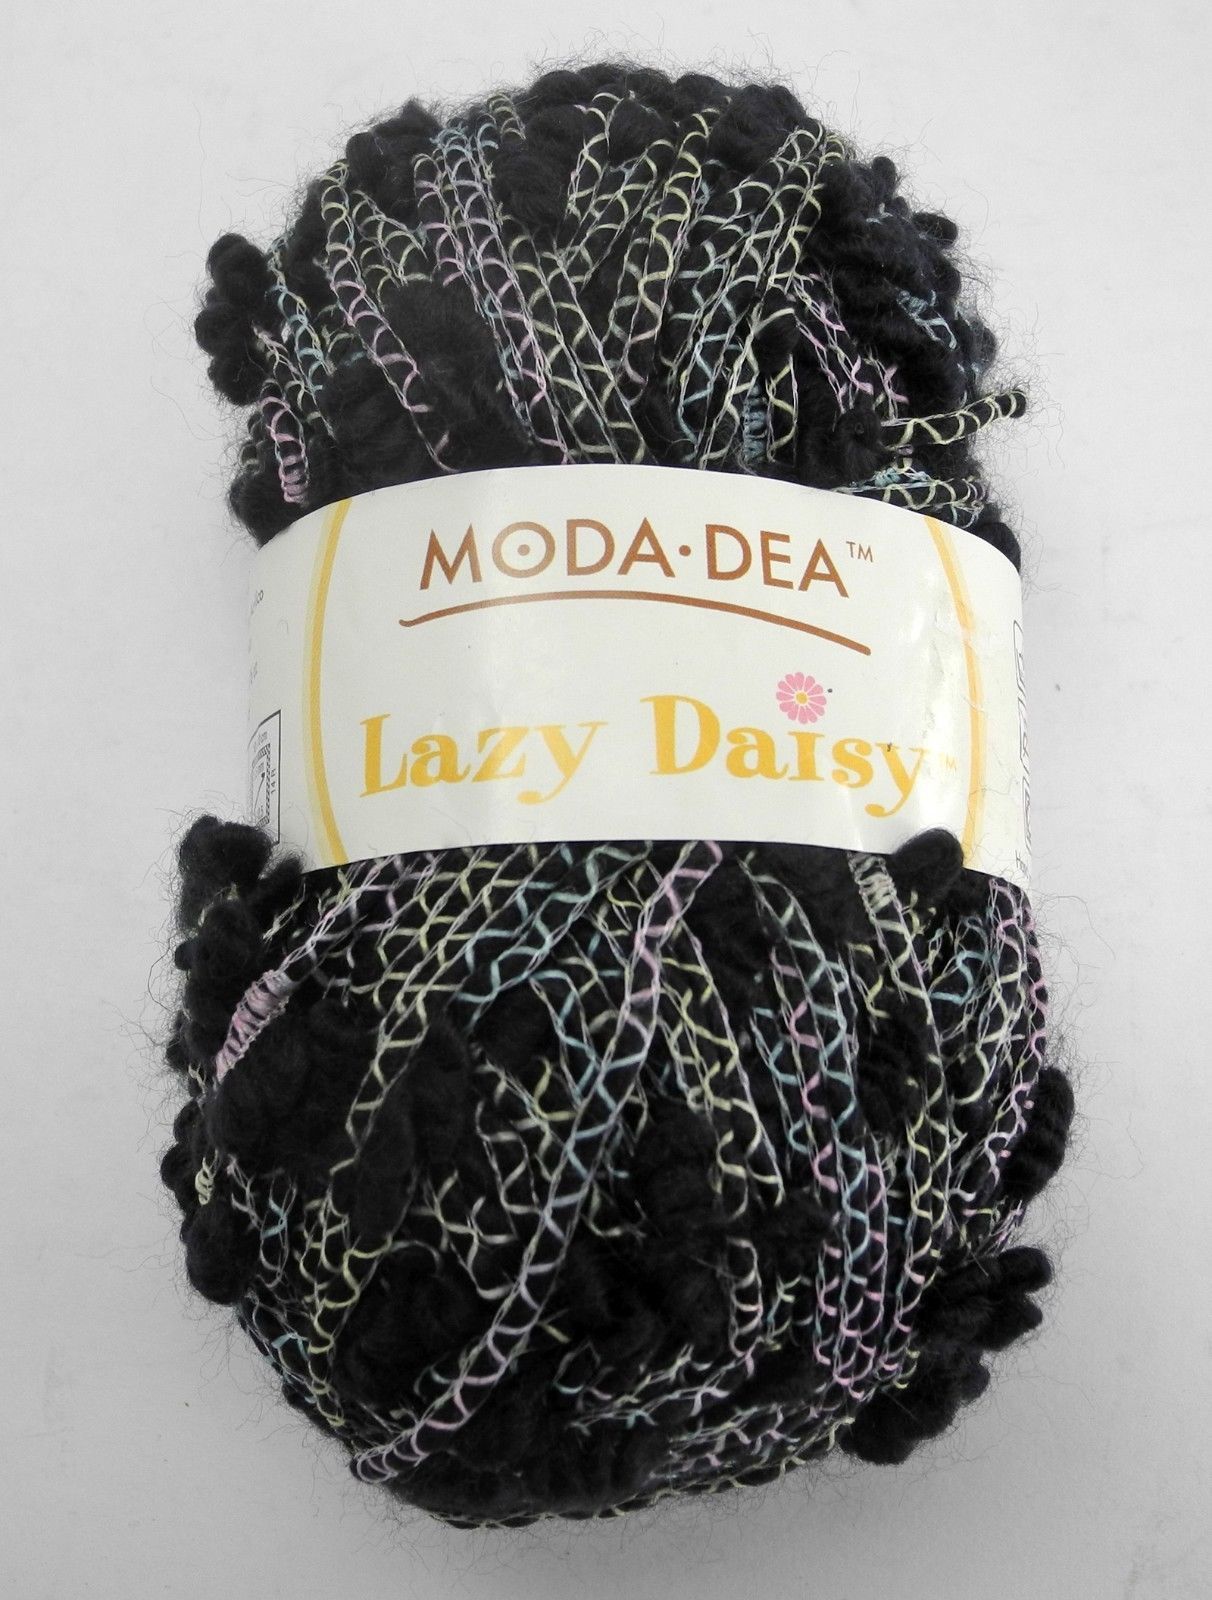 Moda Dea Lazy Daisy Yarn - 1 Skein - Color Wavy Navy #3861 - $6.60